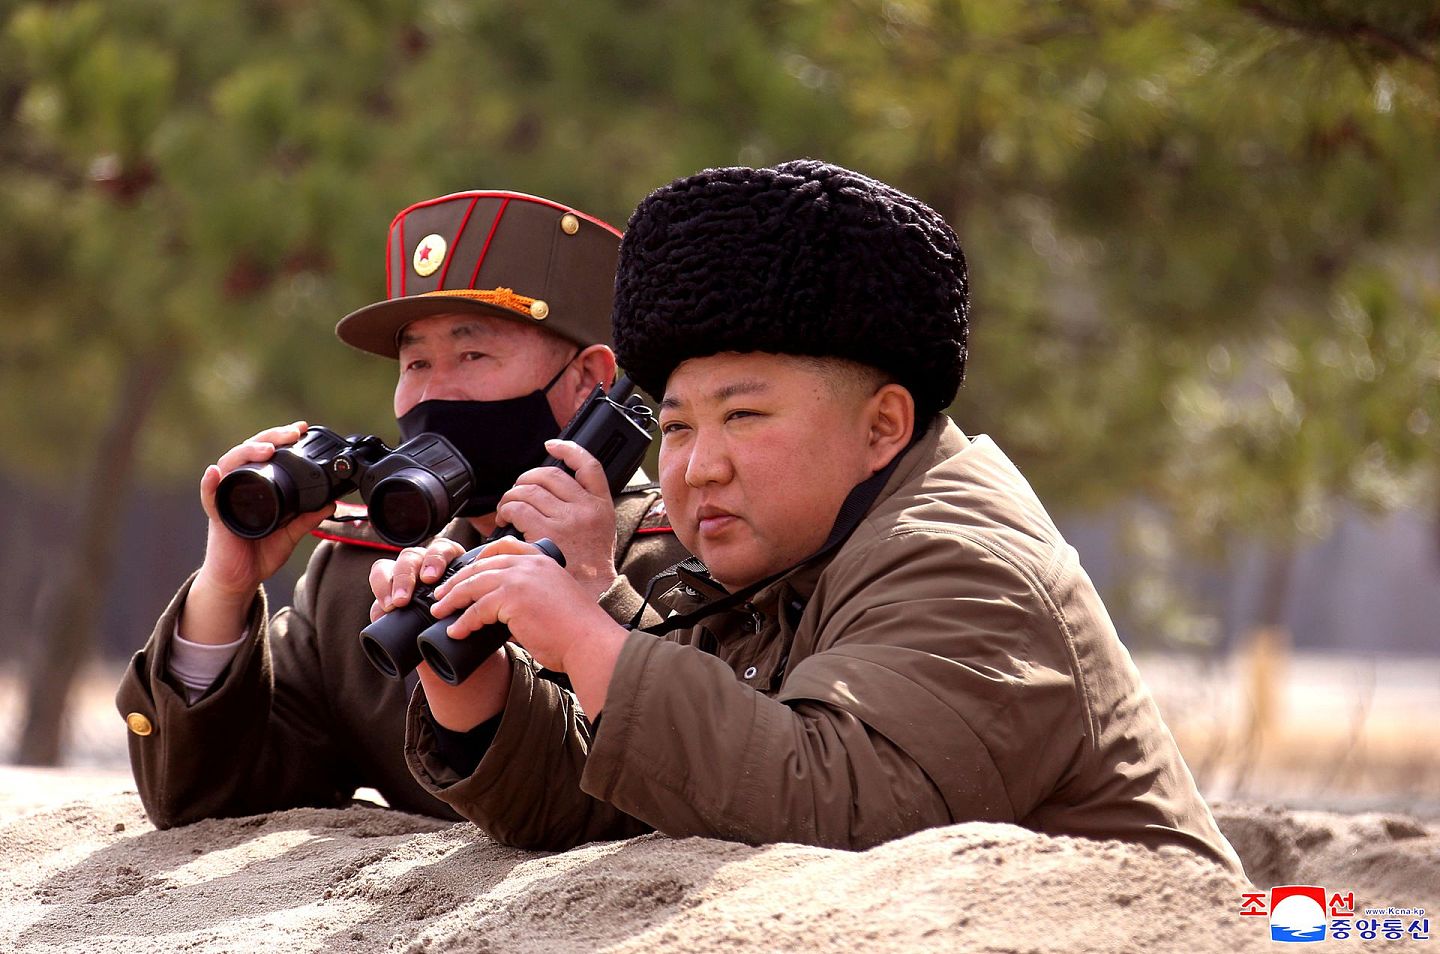 朝鲜中央通讯社(KCNA)于2020年3月9日发布了朝鲜领导人金正恩的照片。这种定期刊发照片的行为也让金正恩确保了其存在感。（路透社）